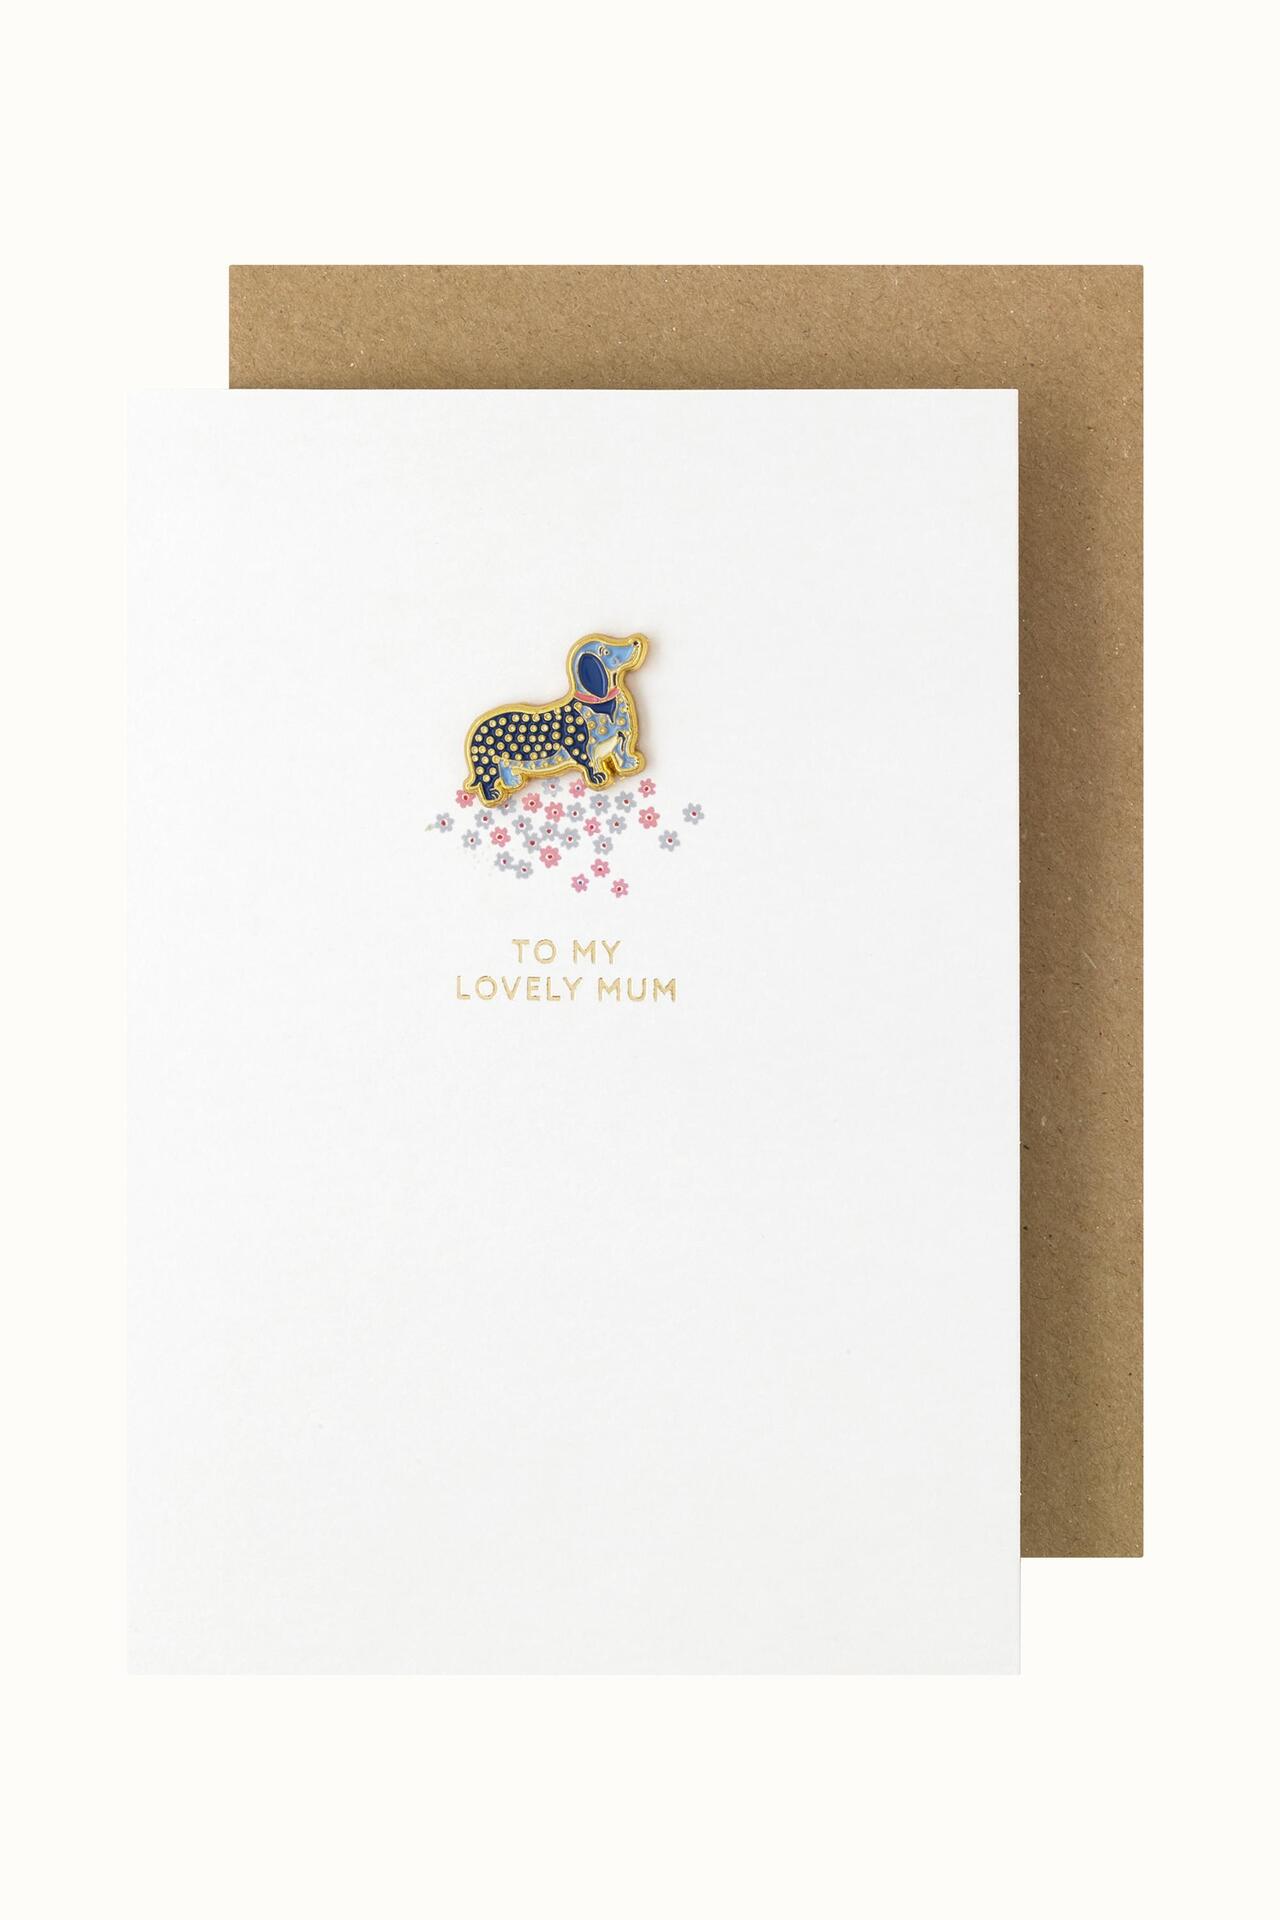 Cath Kidston Puppy Fields Lovely Mum Enamel Pin Card in Cream, 100% Fsc Paper